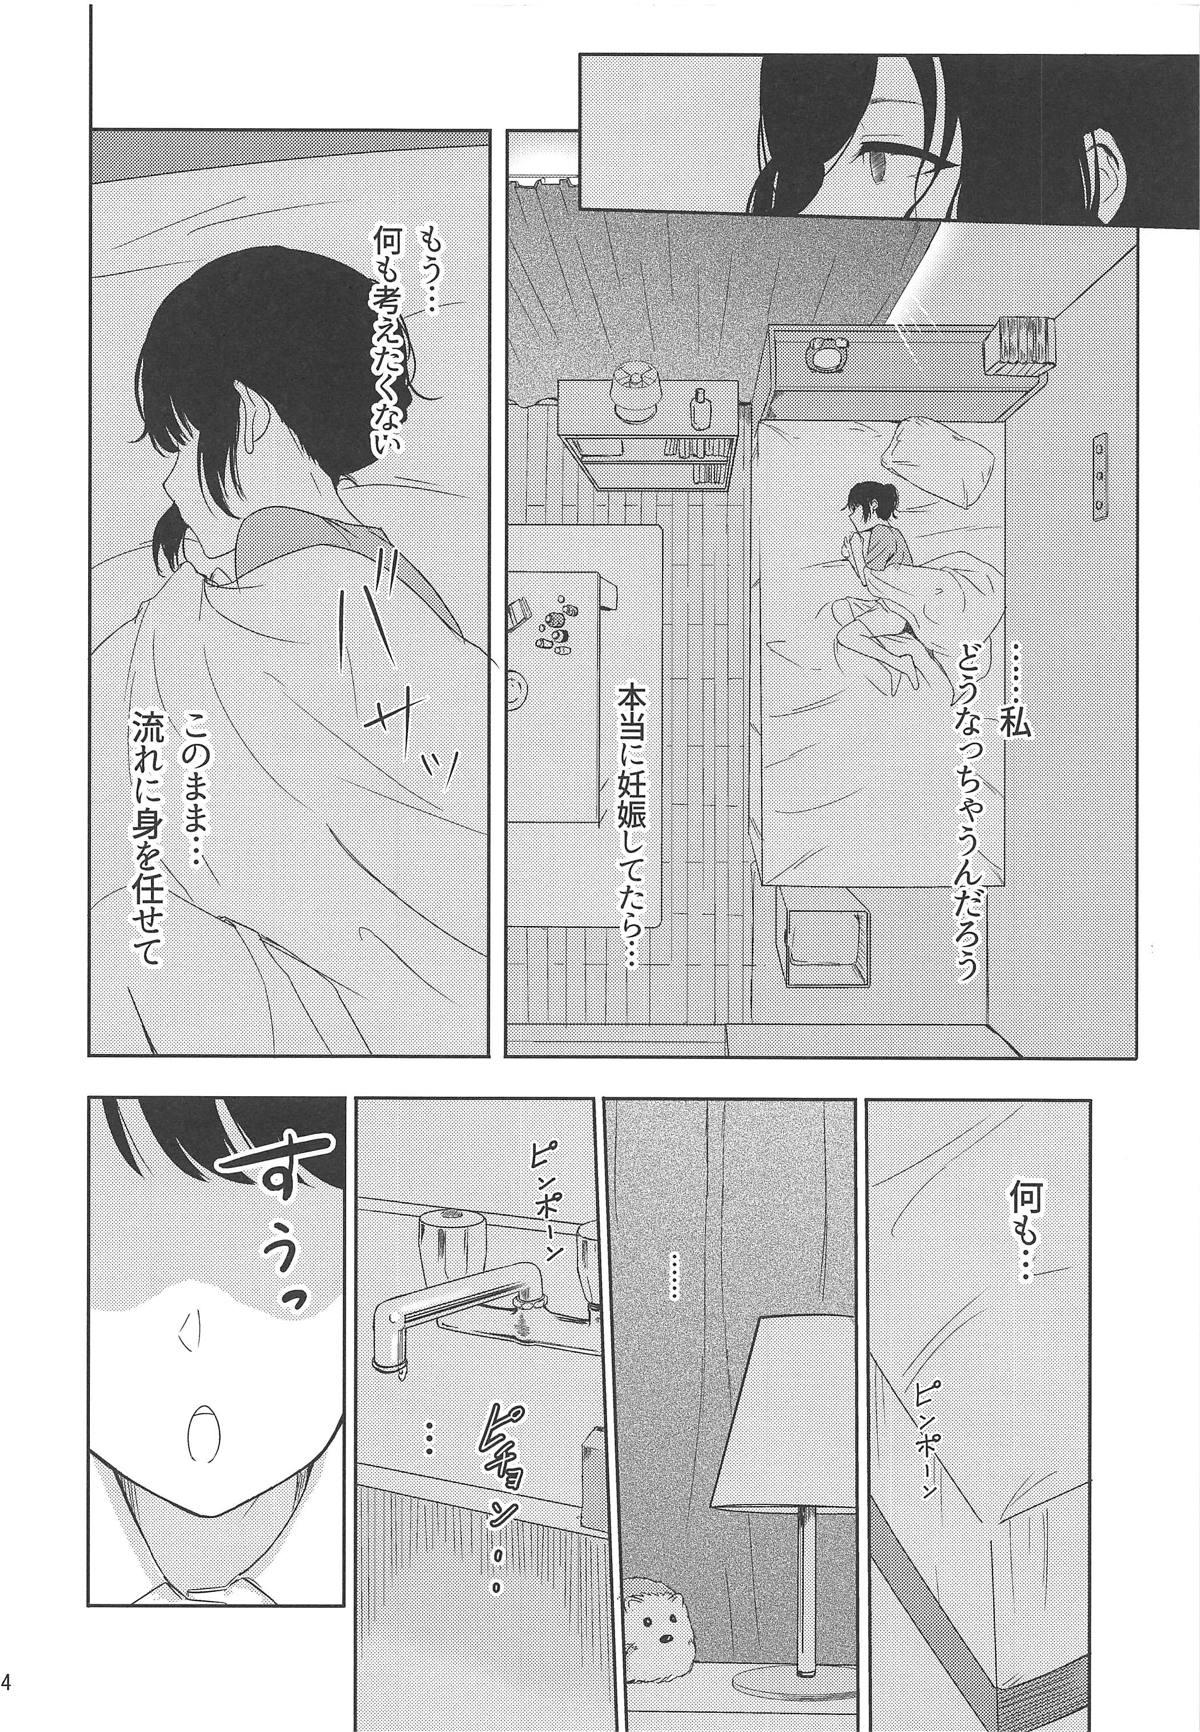 Dirty Talk Mitsuha - Kimi no na wa. Bulge - Page 13